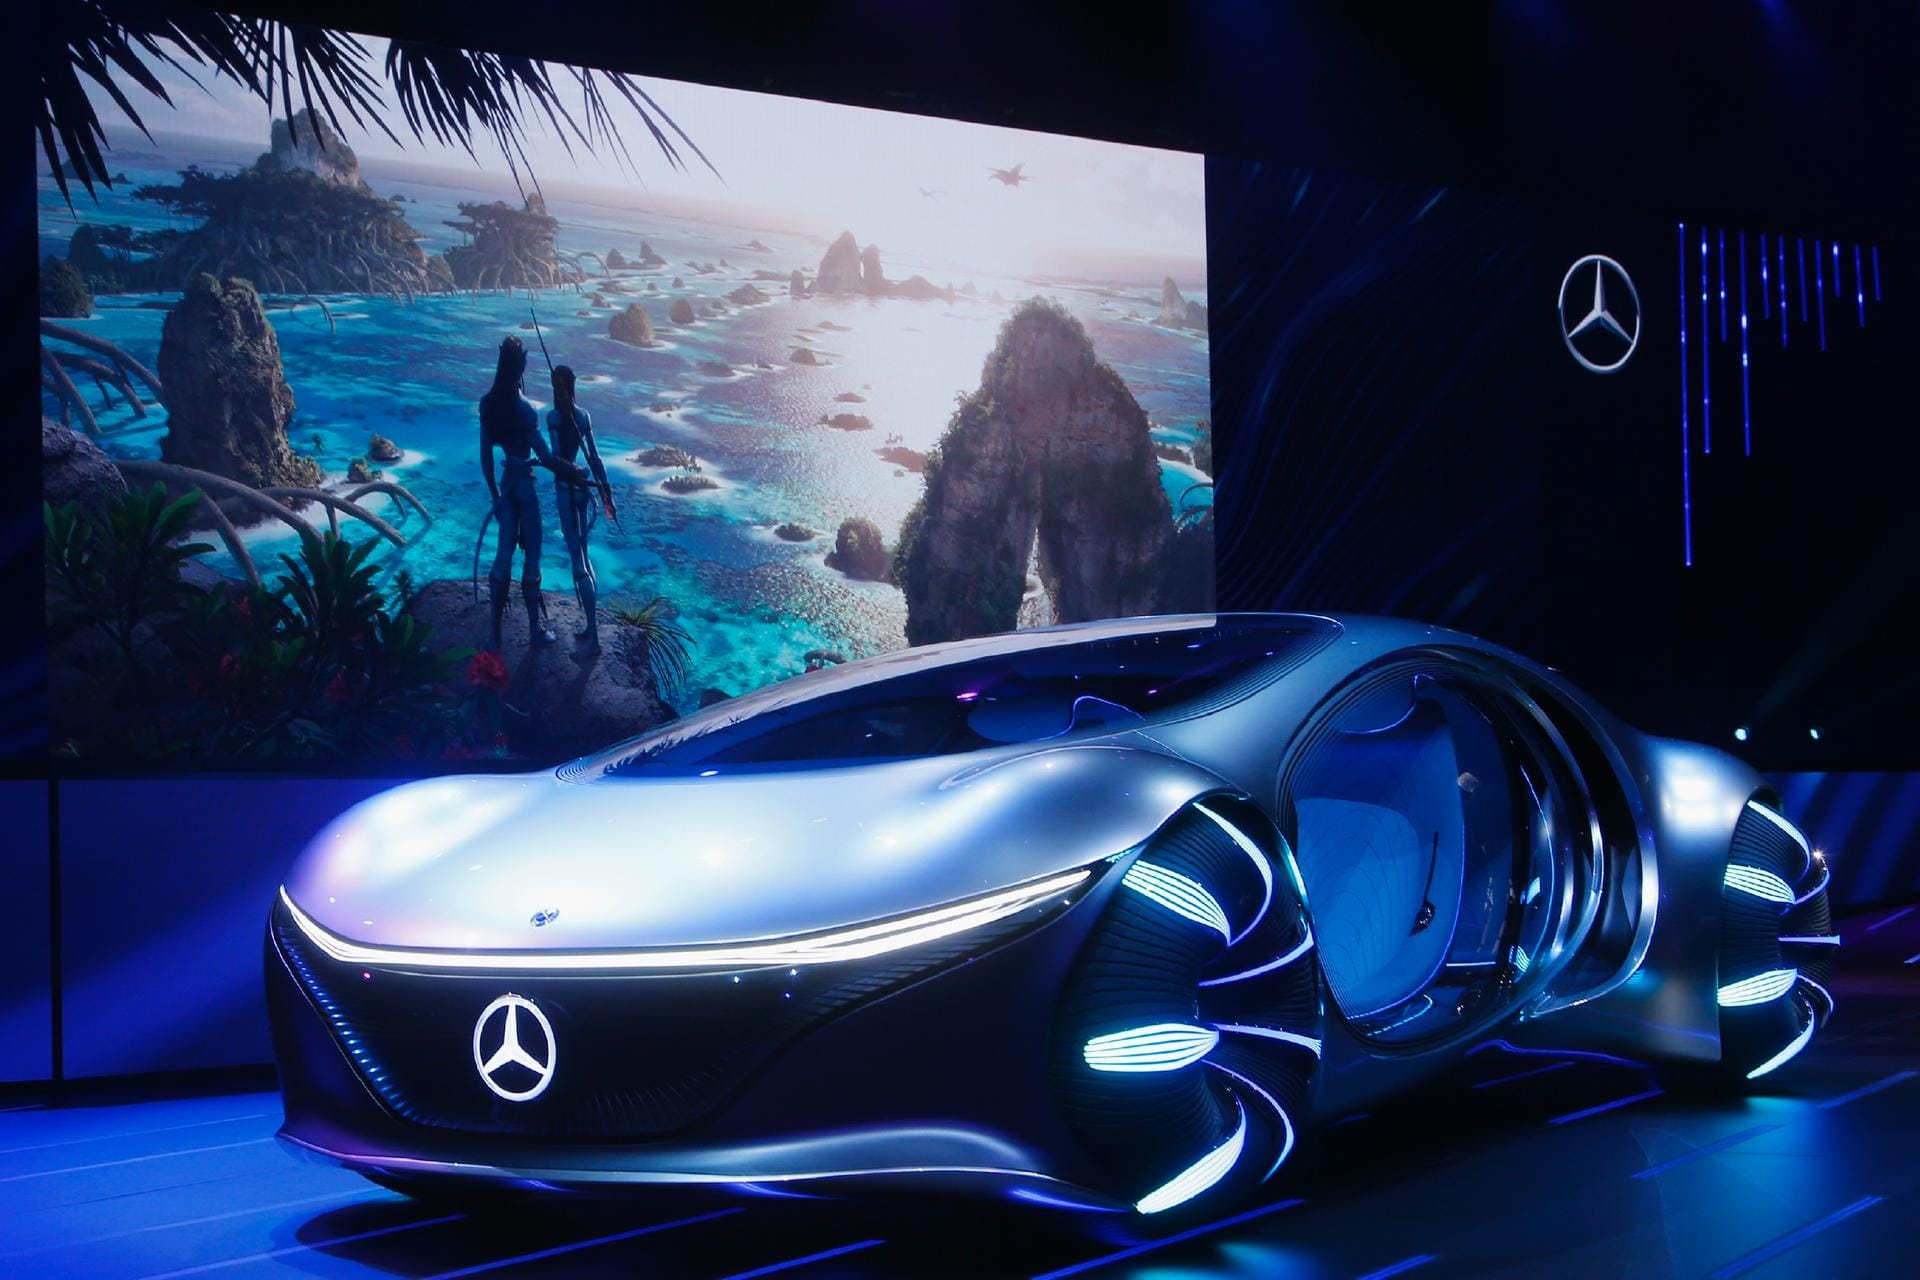 Während der Weltpremiere des Konzeptfahrzeugs Mercedes-Benz "Vision AVTR", wurde auch der neue Film "Avatar 2" angekündigt.